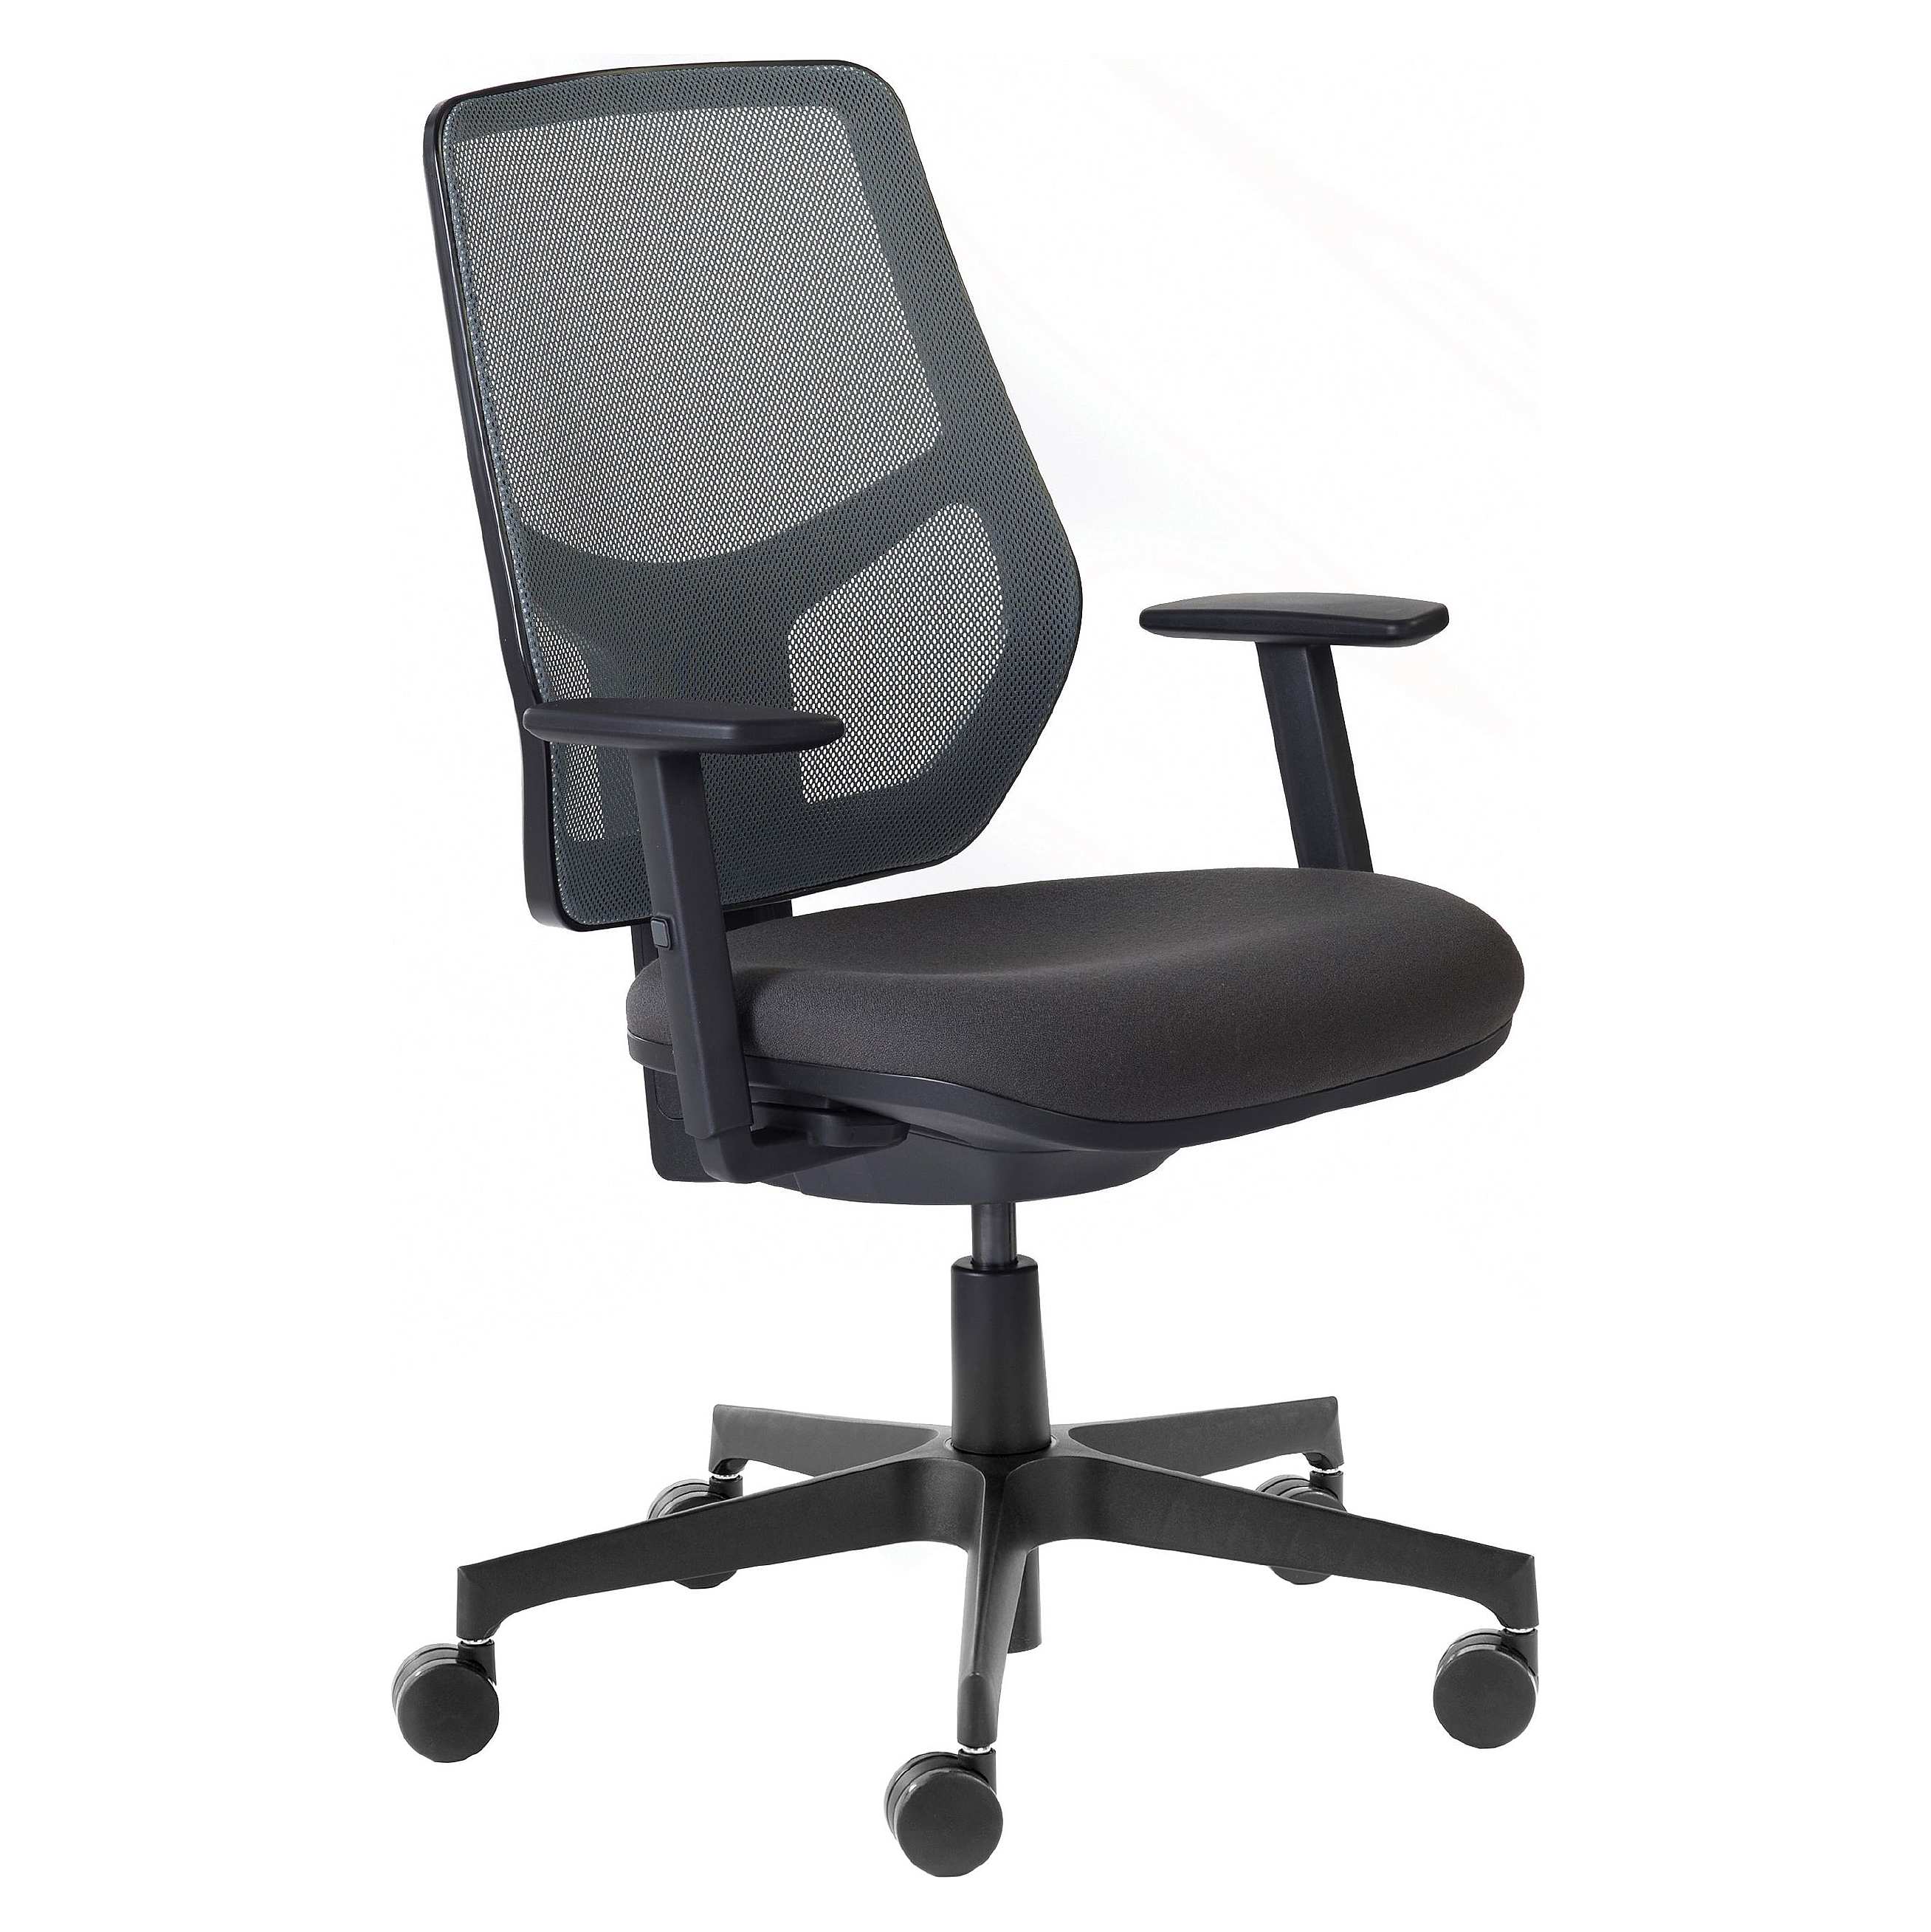 Rhapsody Mesh Back Office Chair